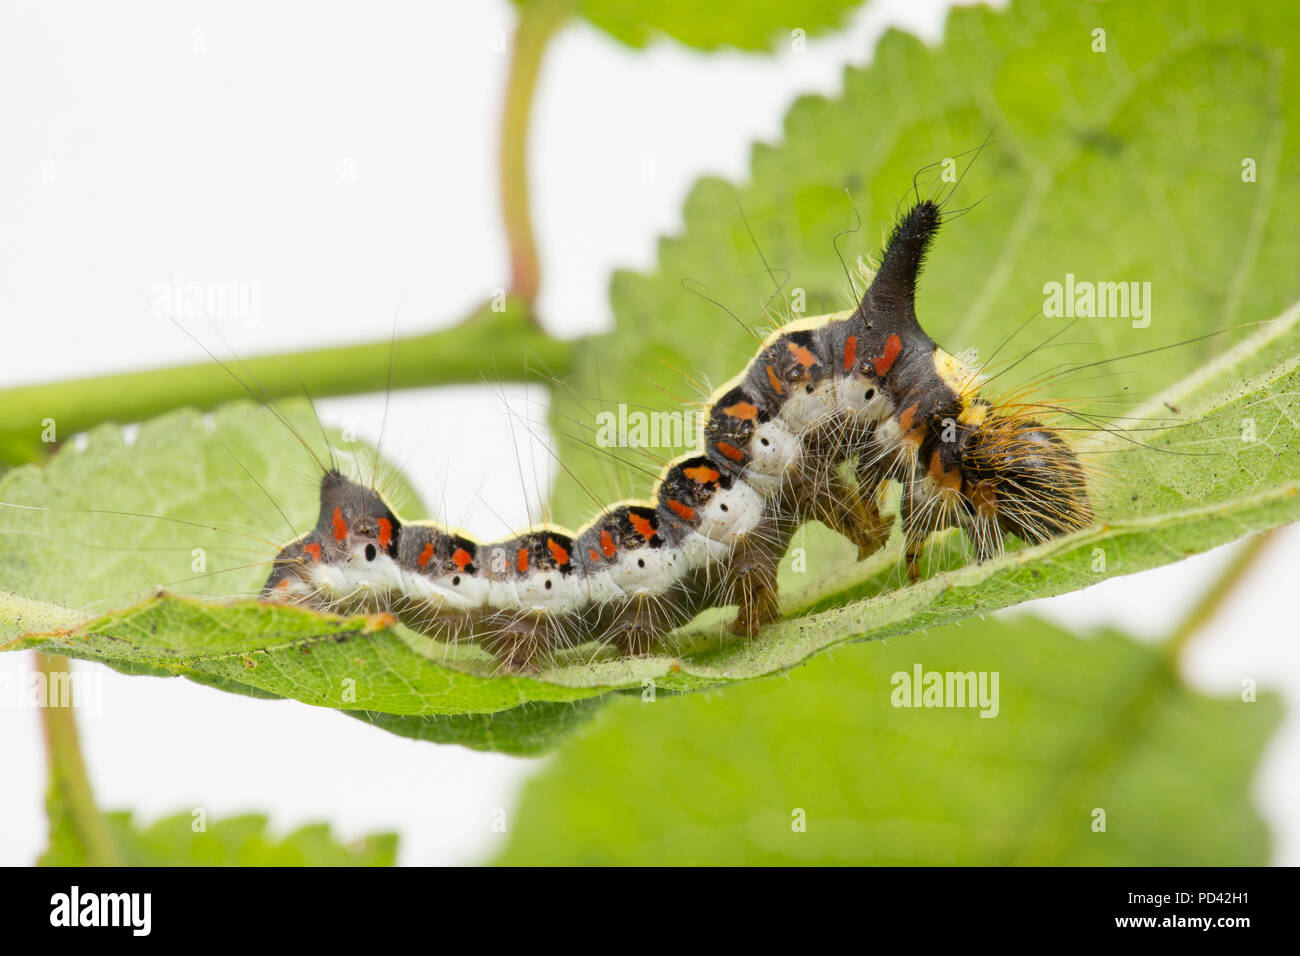 Un pugnale grigio moth caterpillar, Acronicta psi, trovato l'alimentazione sulle foglie bullace fotografata in uno studio prima del rilascio. Nord Inghilterra Dorset Regno Unito GB Foto Stock